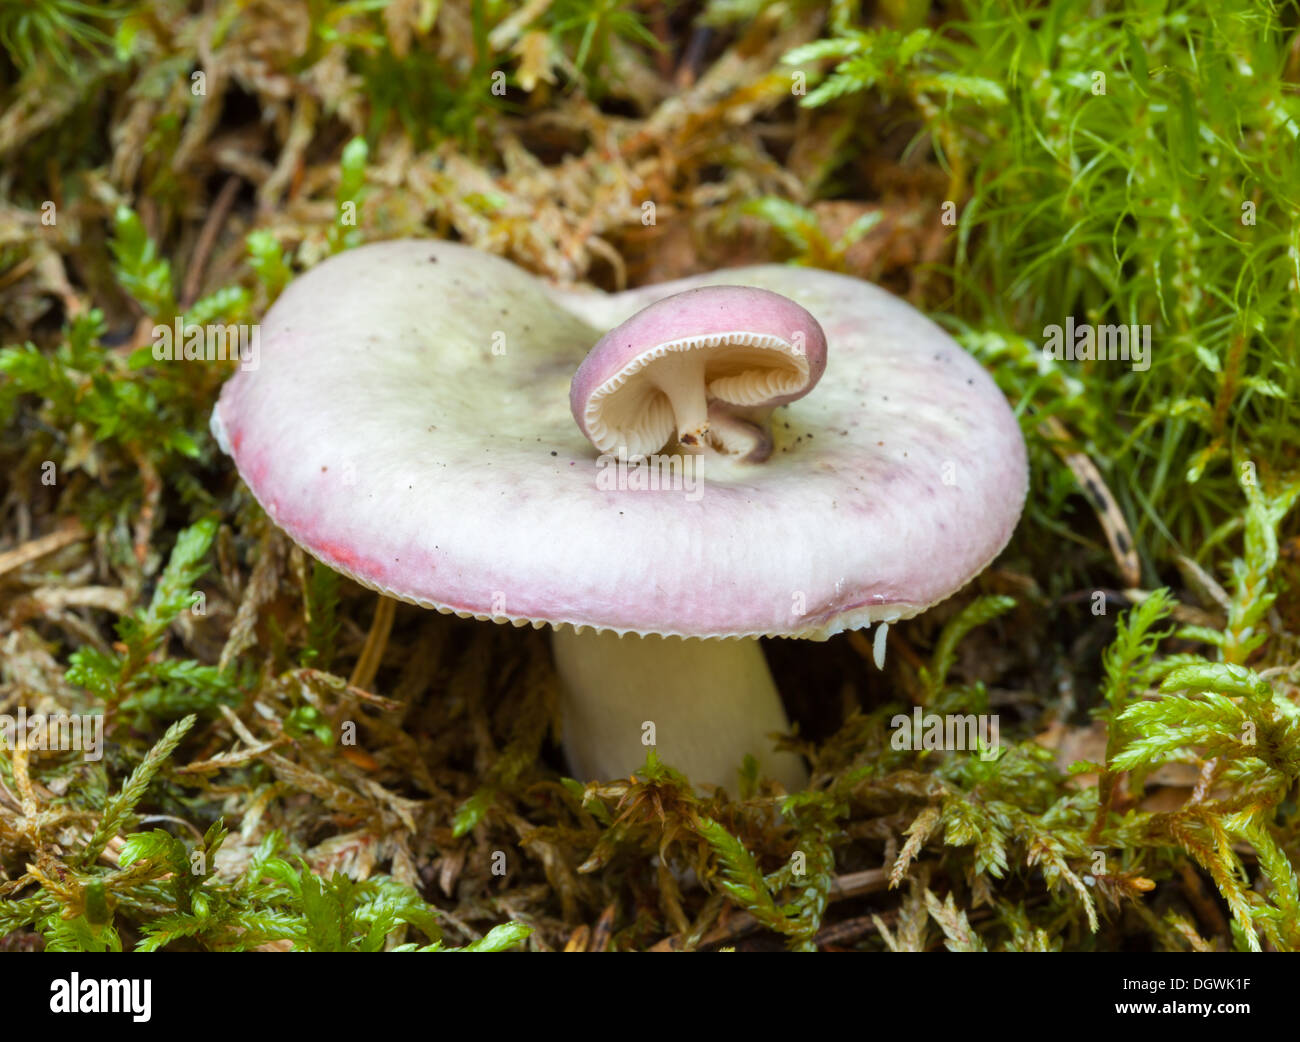 Autumn mushrooms in Espoo, Finland Stock Photo